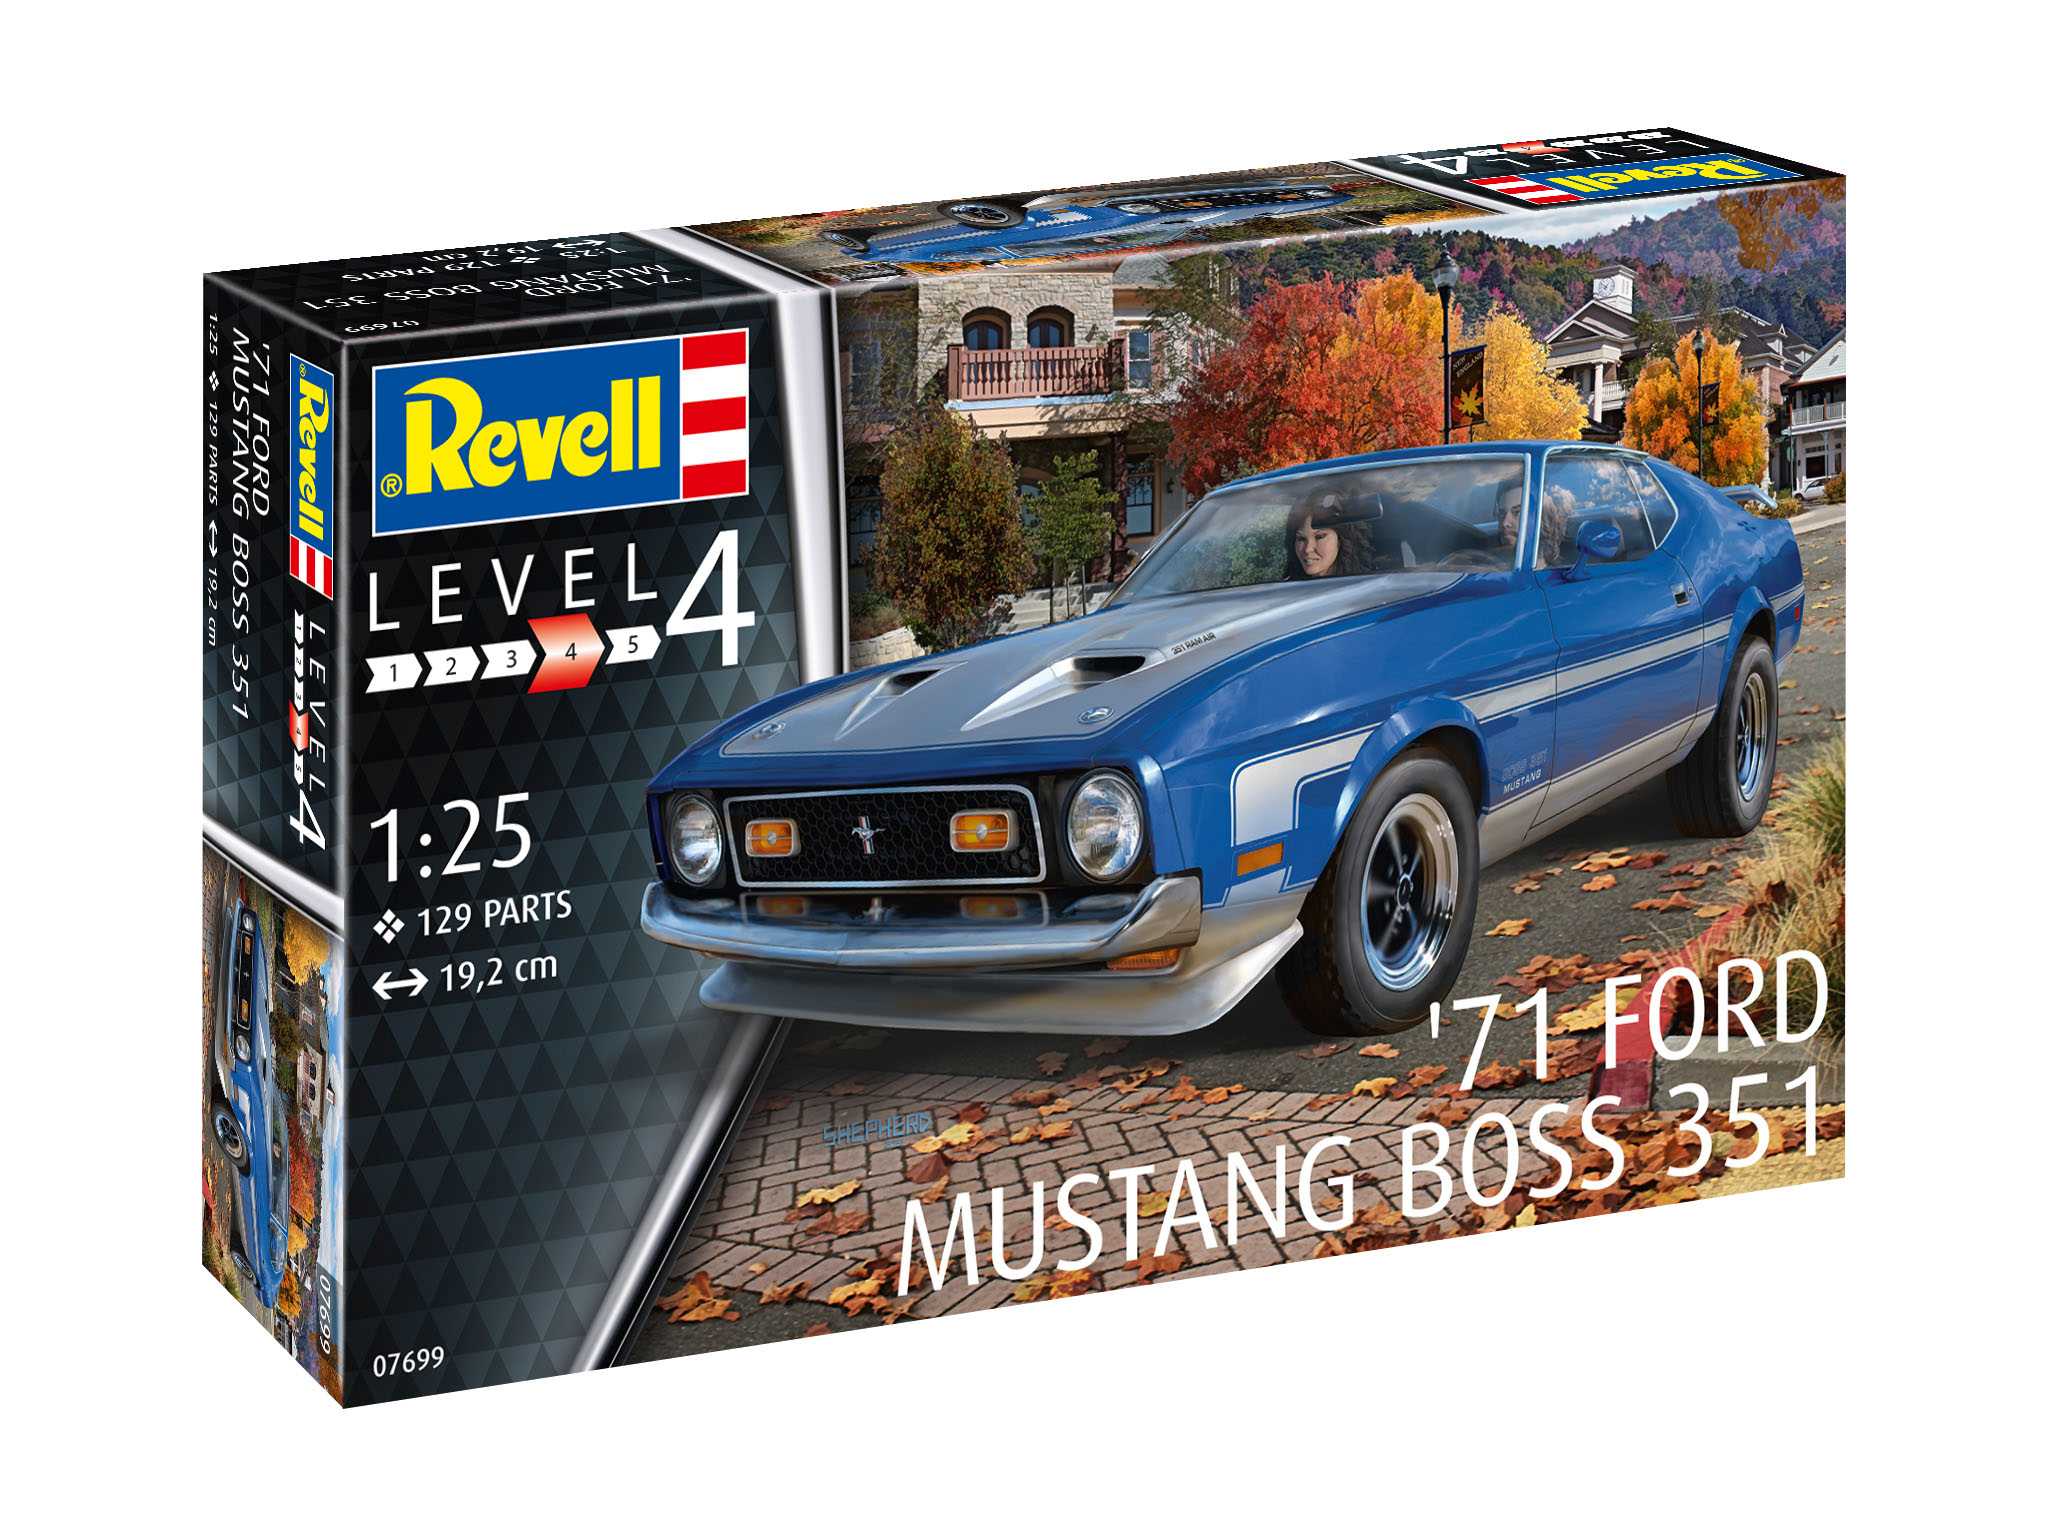 Revell Plastic ModelKit auto 07699 - 71 Ford Mustang Boss 351 (1:25)